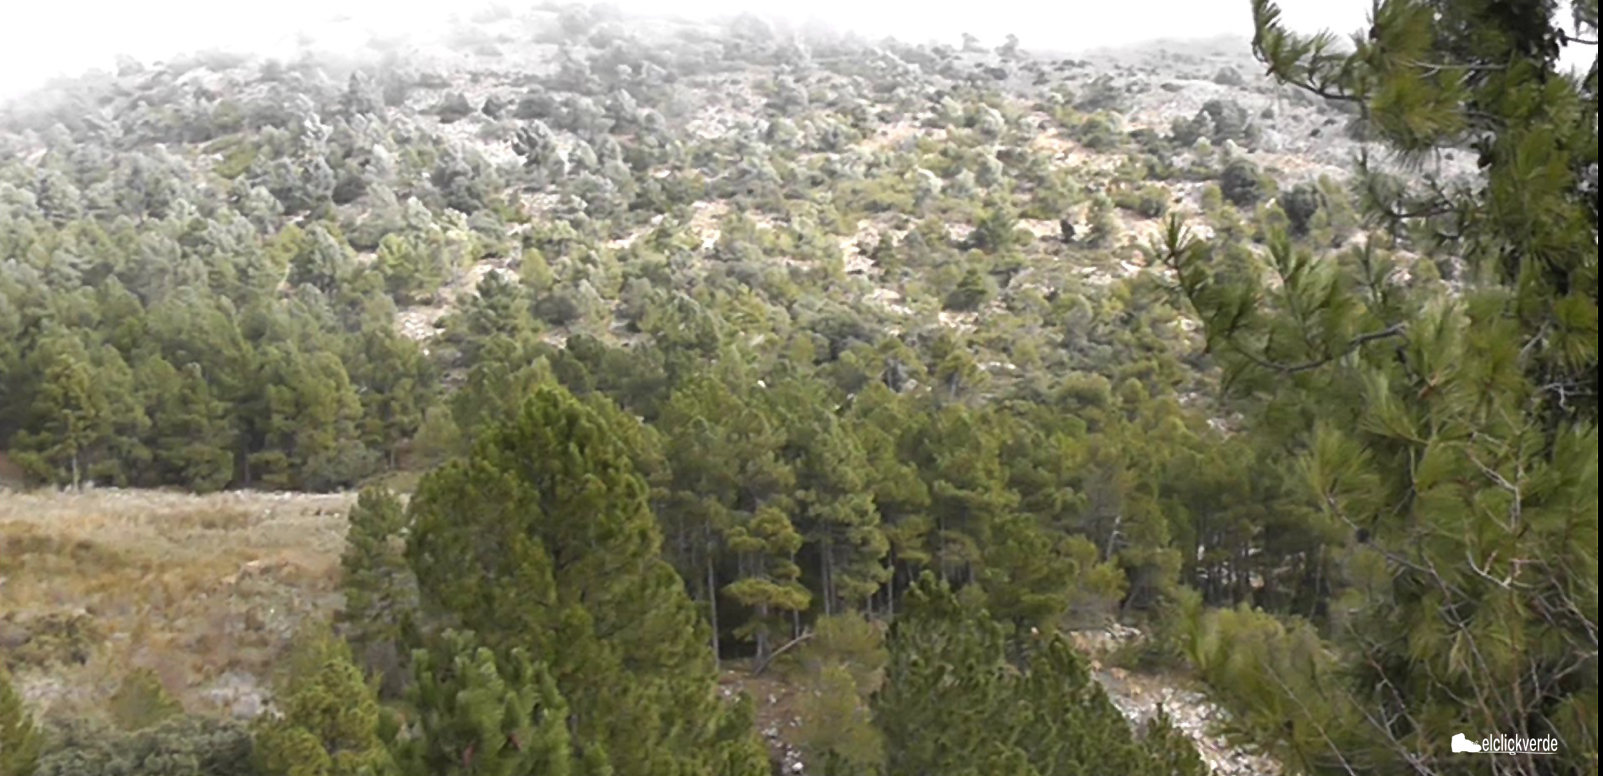 Paisaje de Sierra Espuña coronado por la niebla